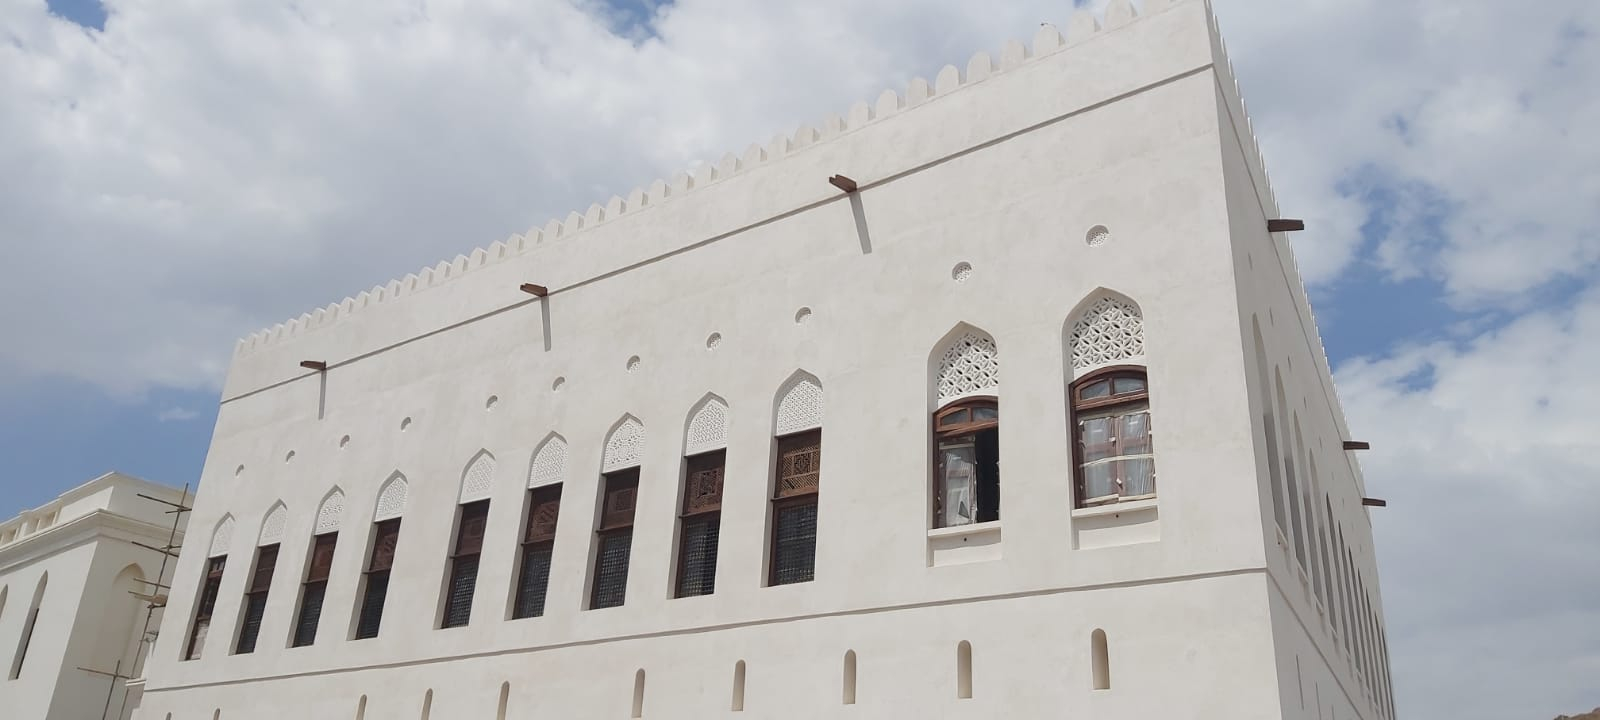 حفظ المنازل التاريخية في سلطنة عمان وإعادة تأهيلها